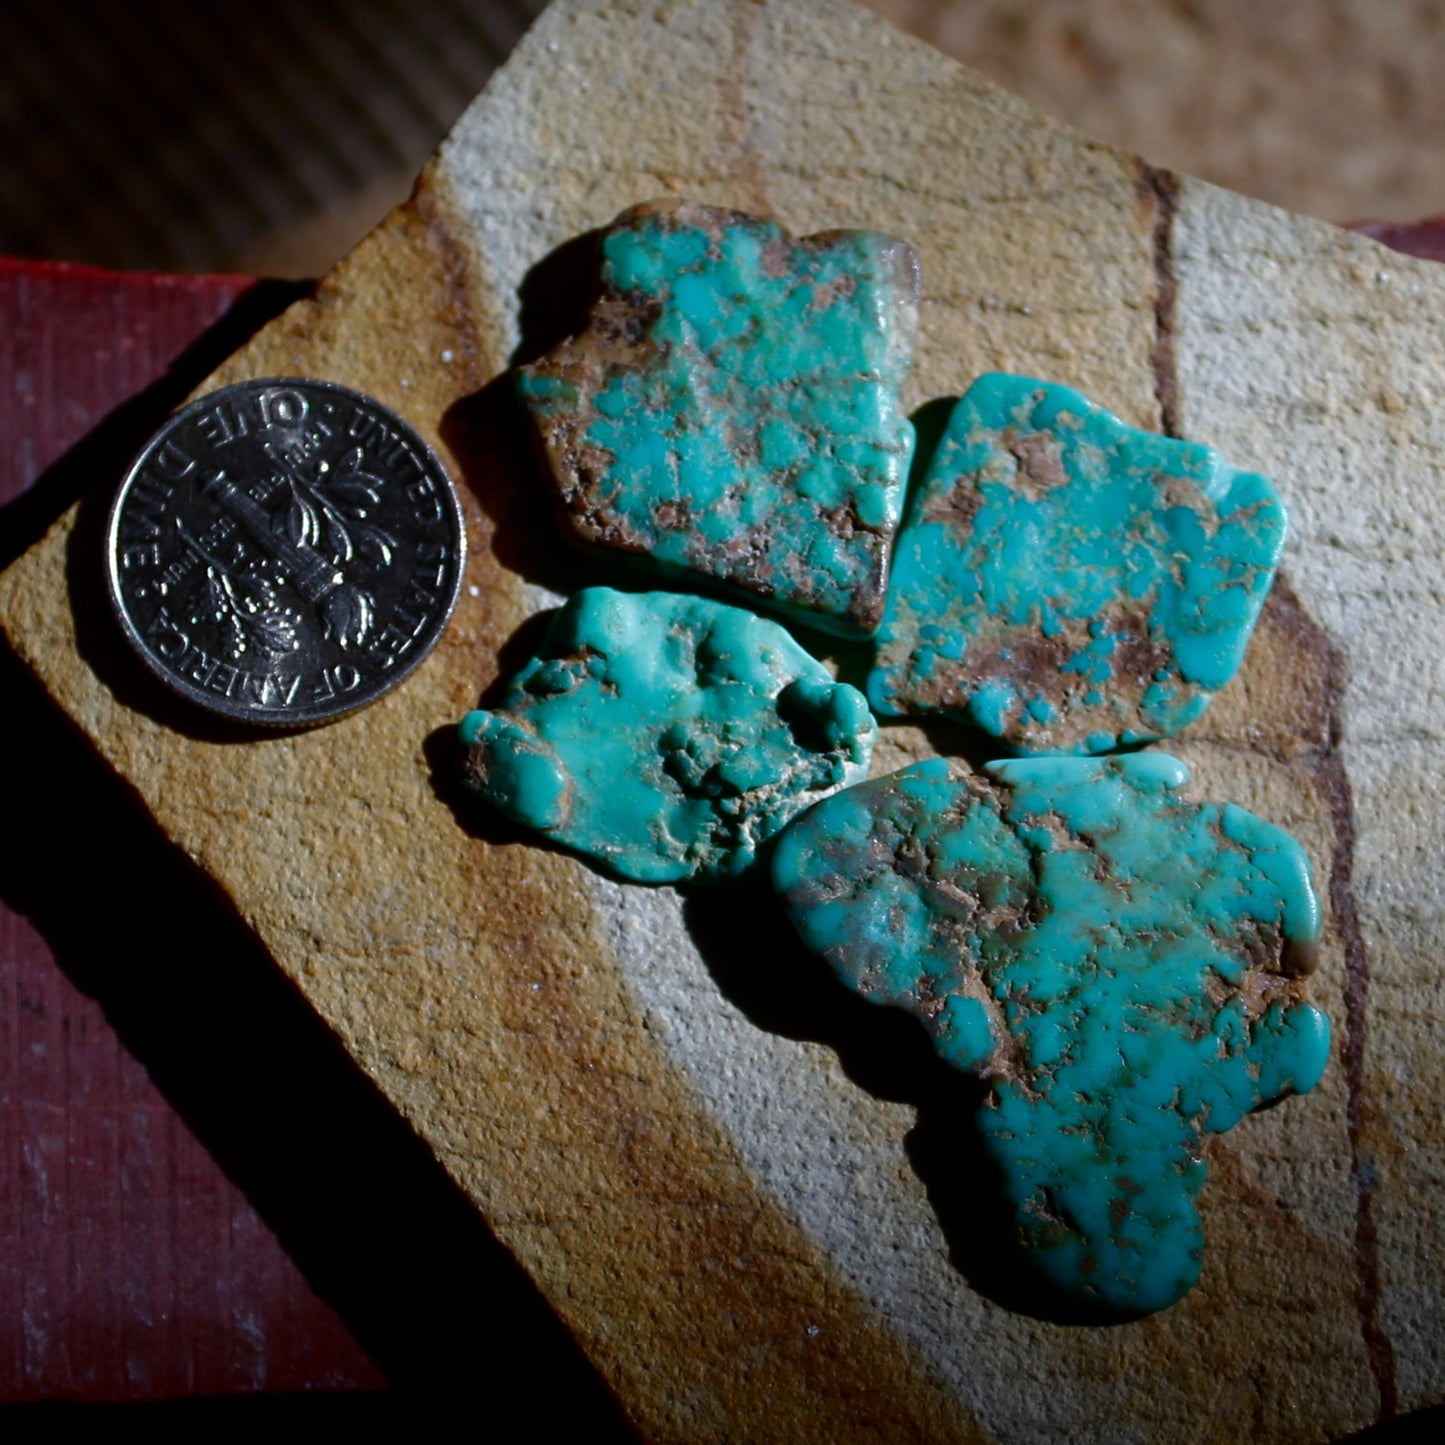 6.1 grams deep blue teal Stone Mountain Turquoise vein segments